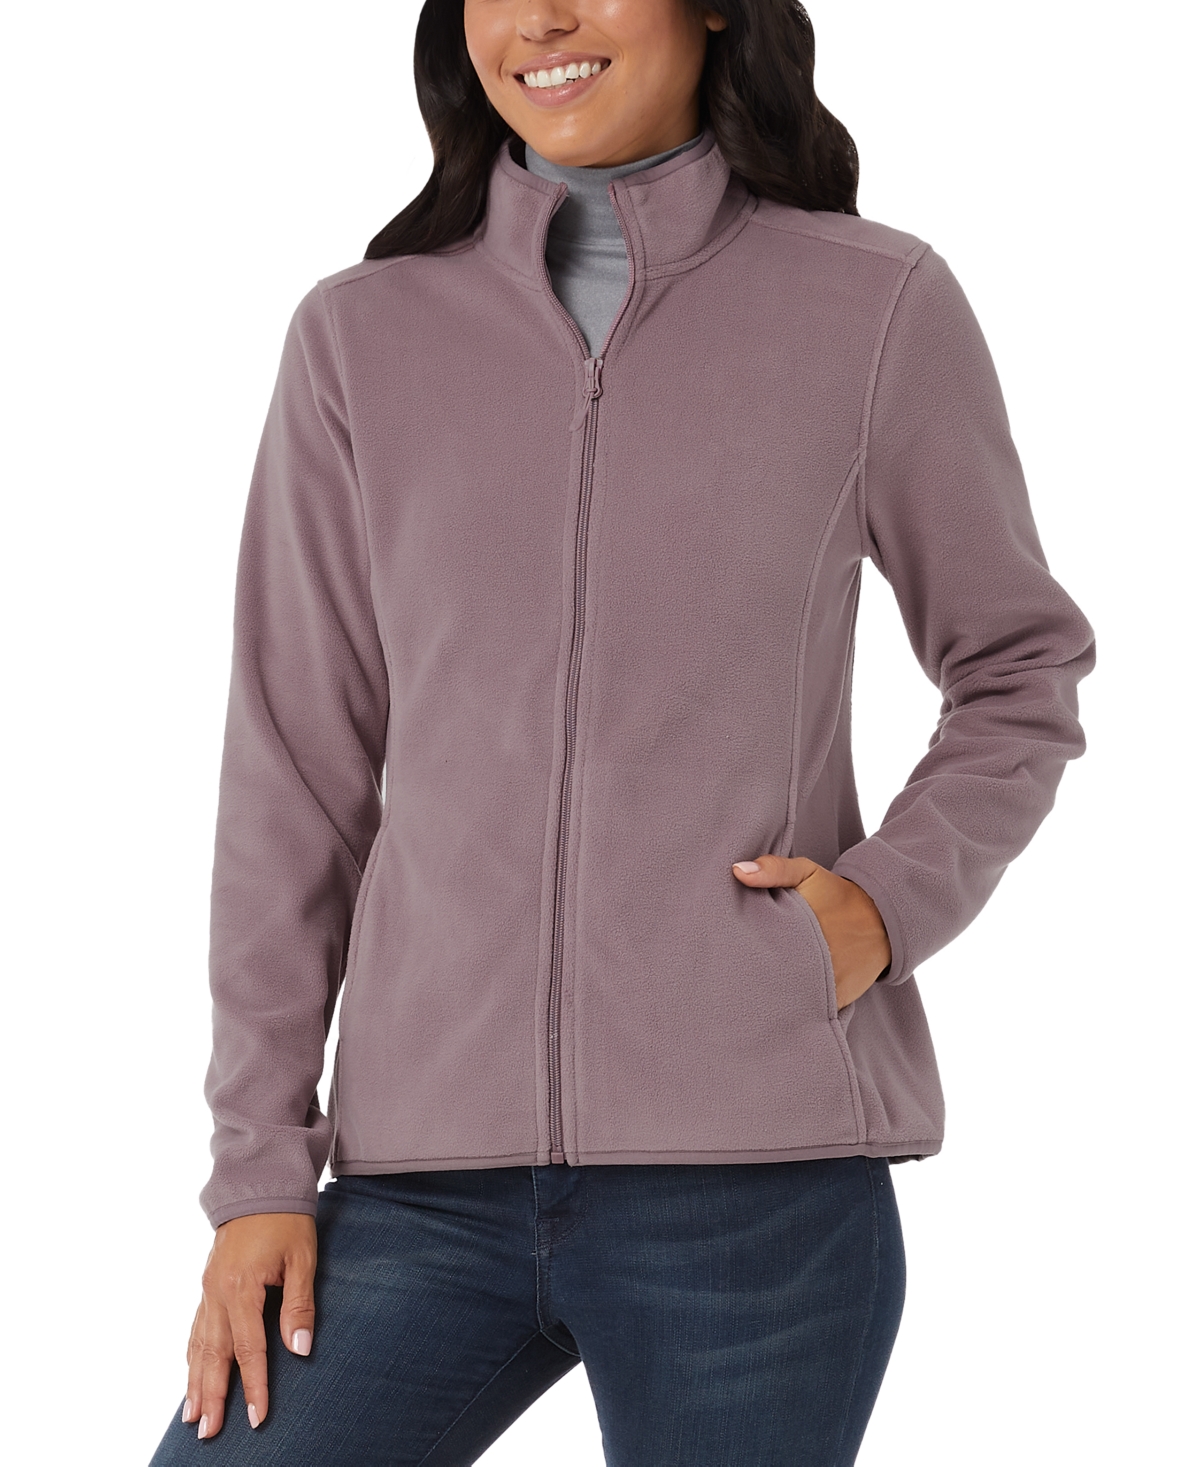 Women's Fleece Zippered Mock-Neck Sweatshirt - CHATEAU GREY